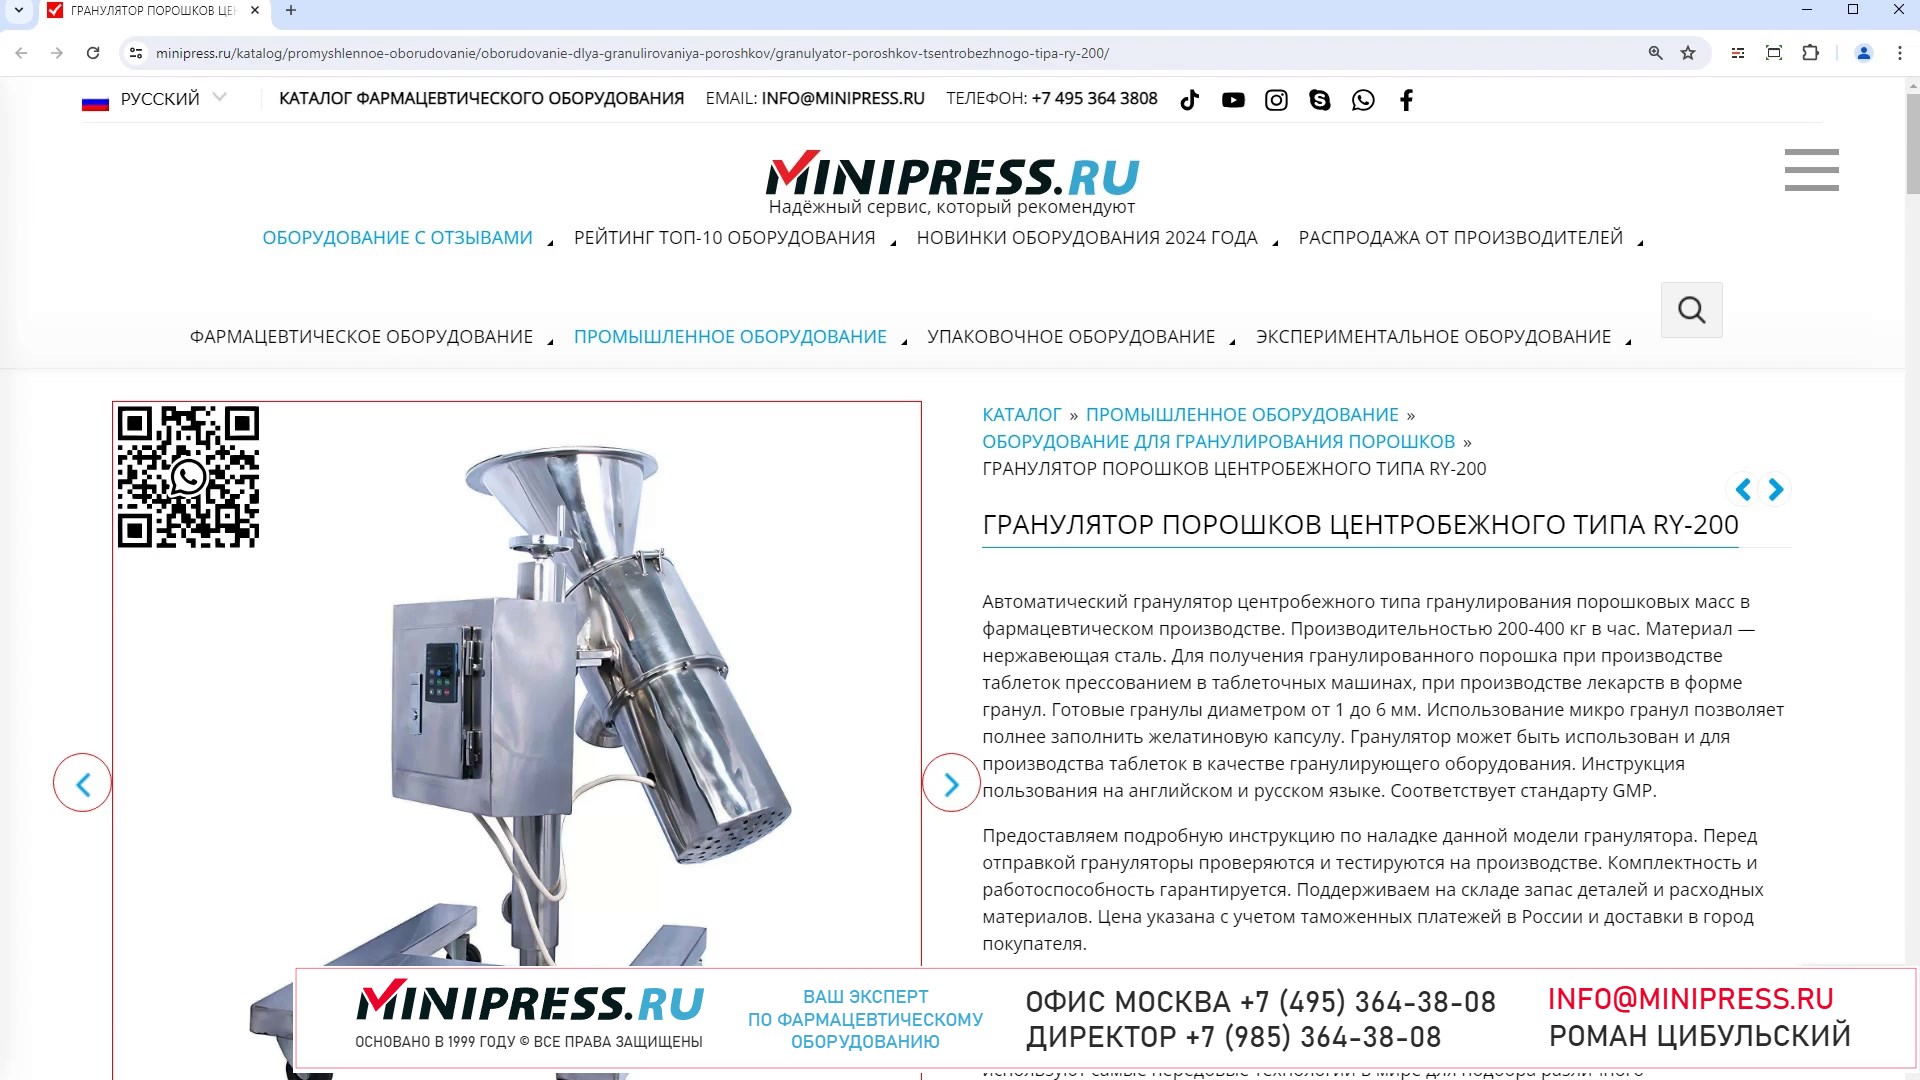 Minipress.ru Гранулятор порошков центробежного типа RY-200